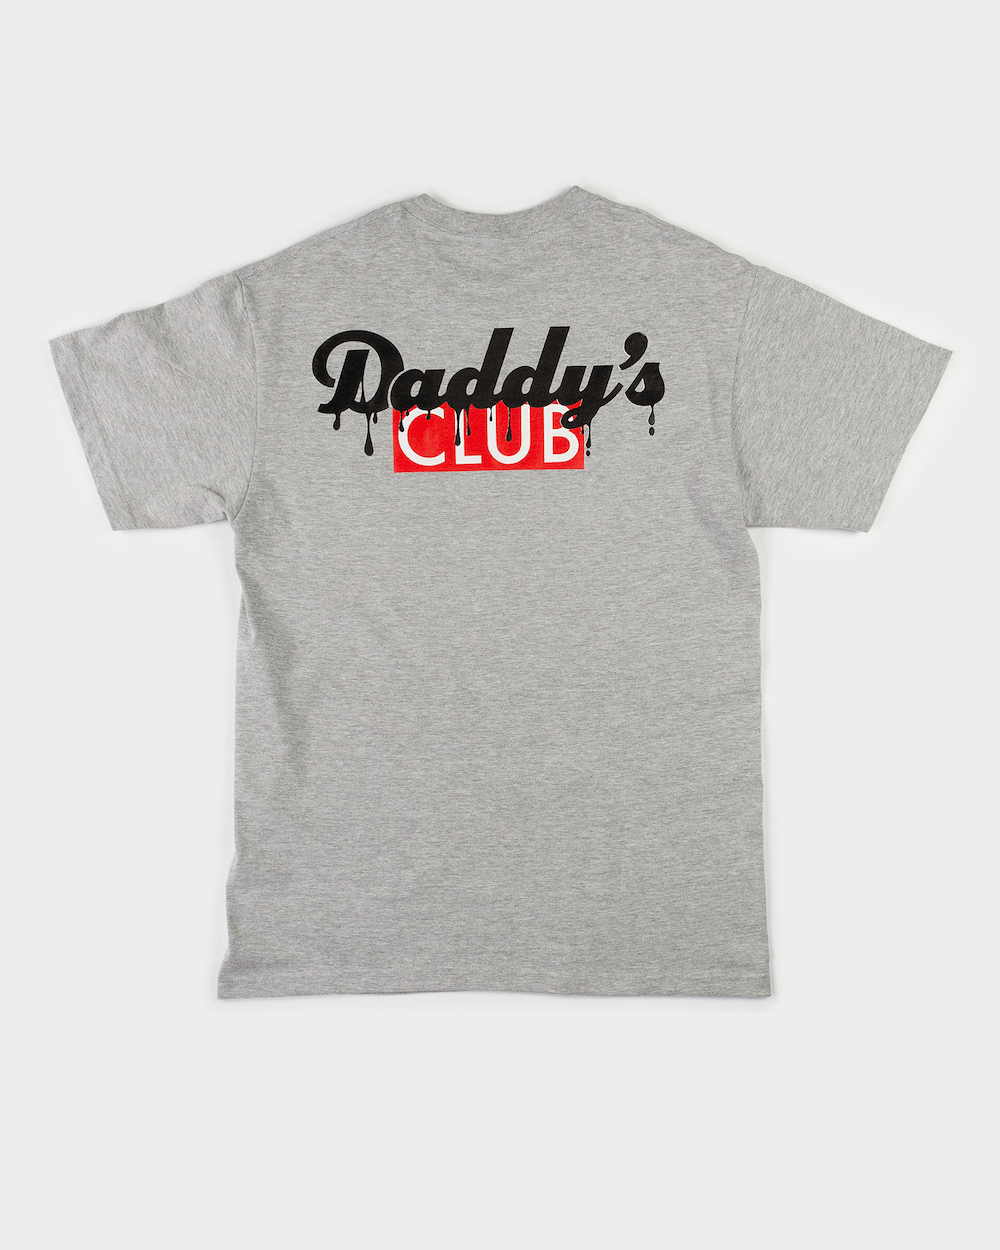 Daddy's Club